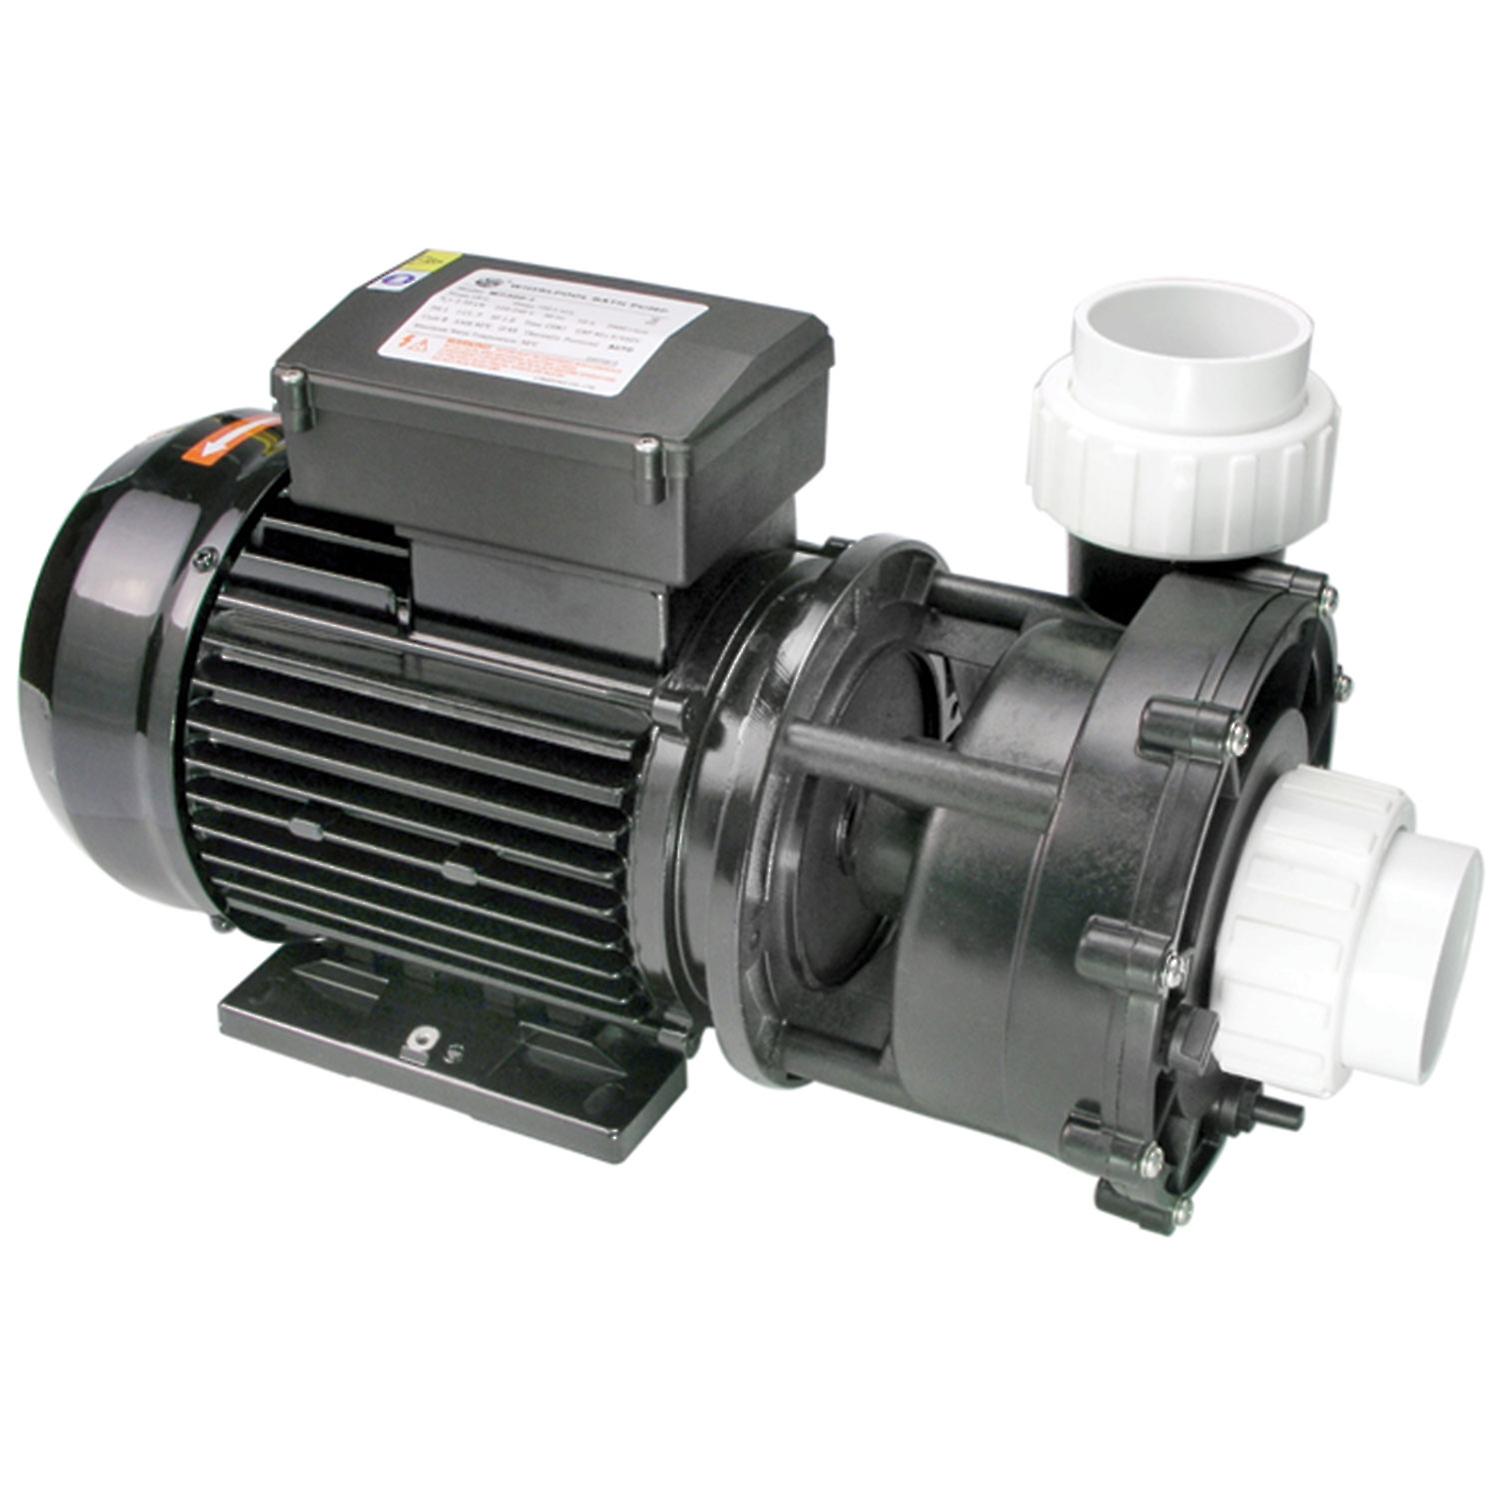 LX J300II-WP (WP 300 II) 2-speed pump 2" x 2"